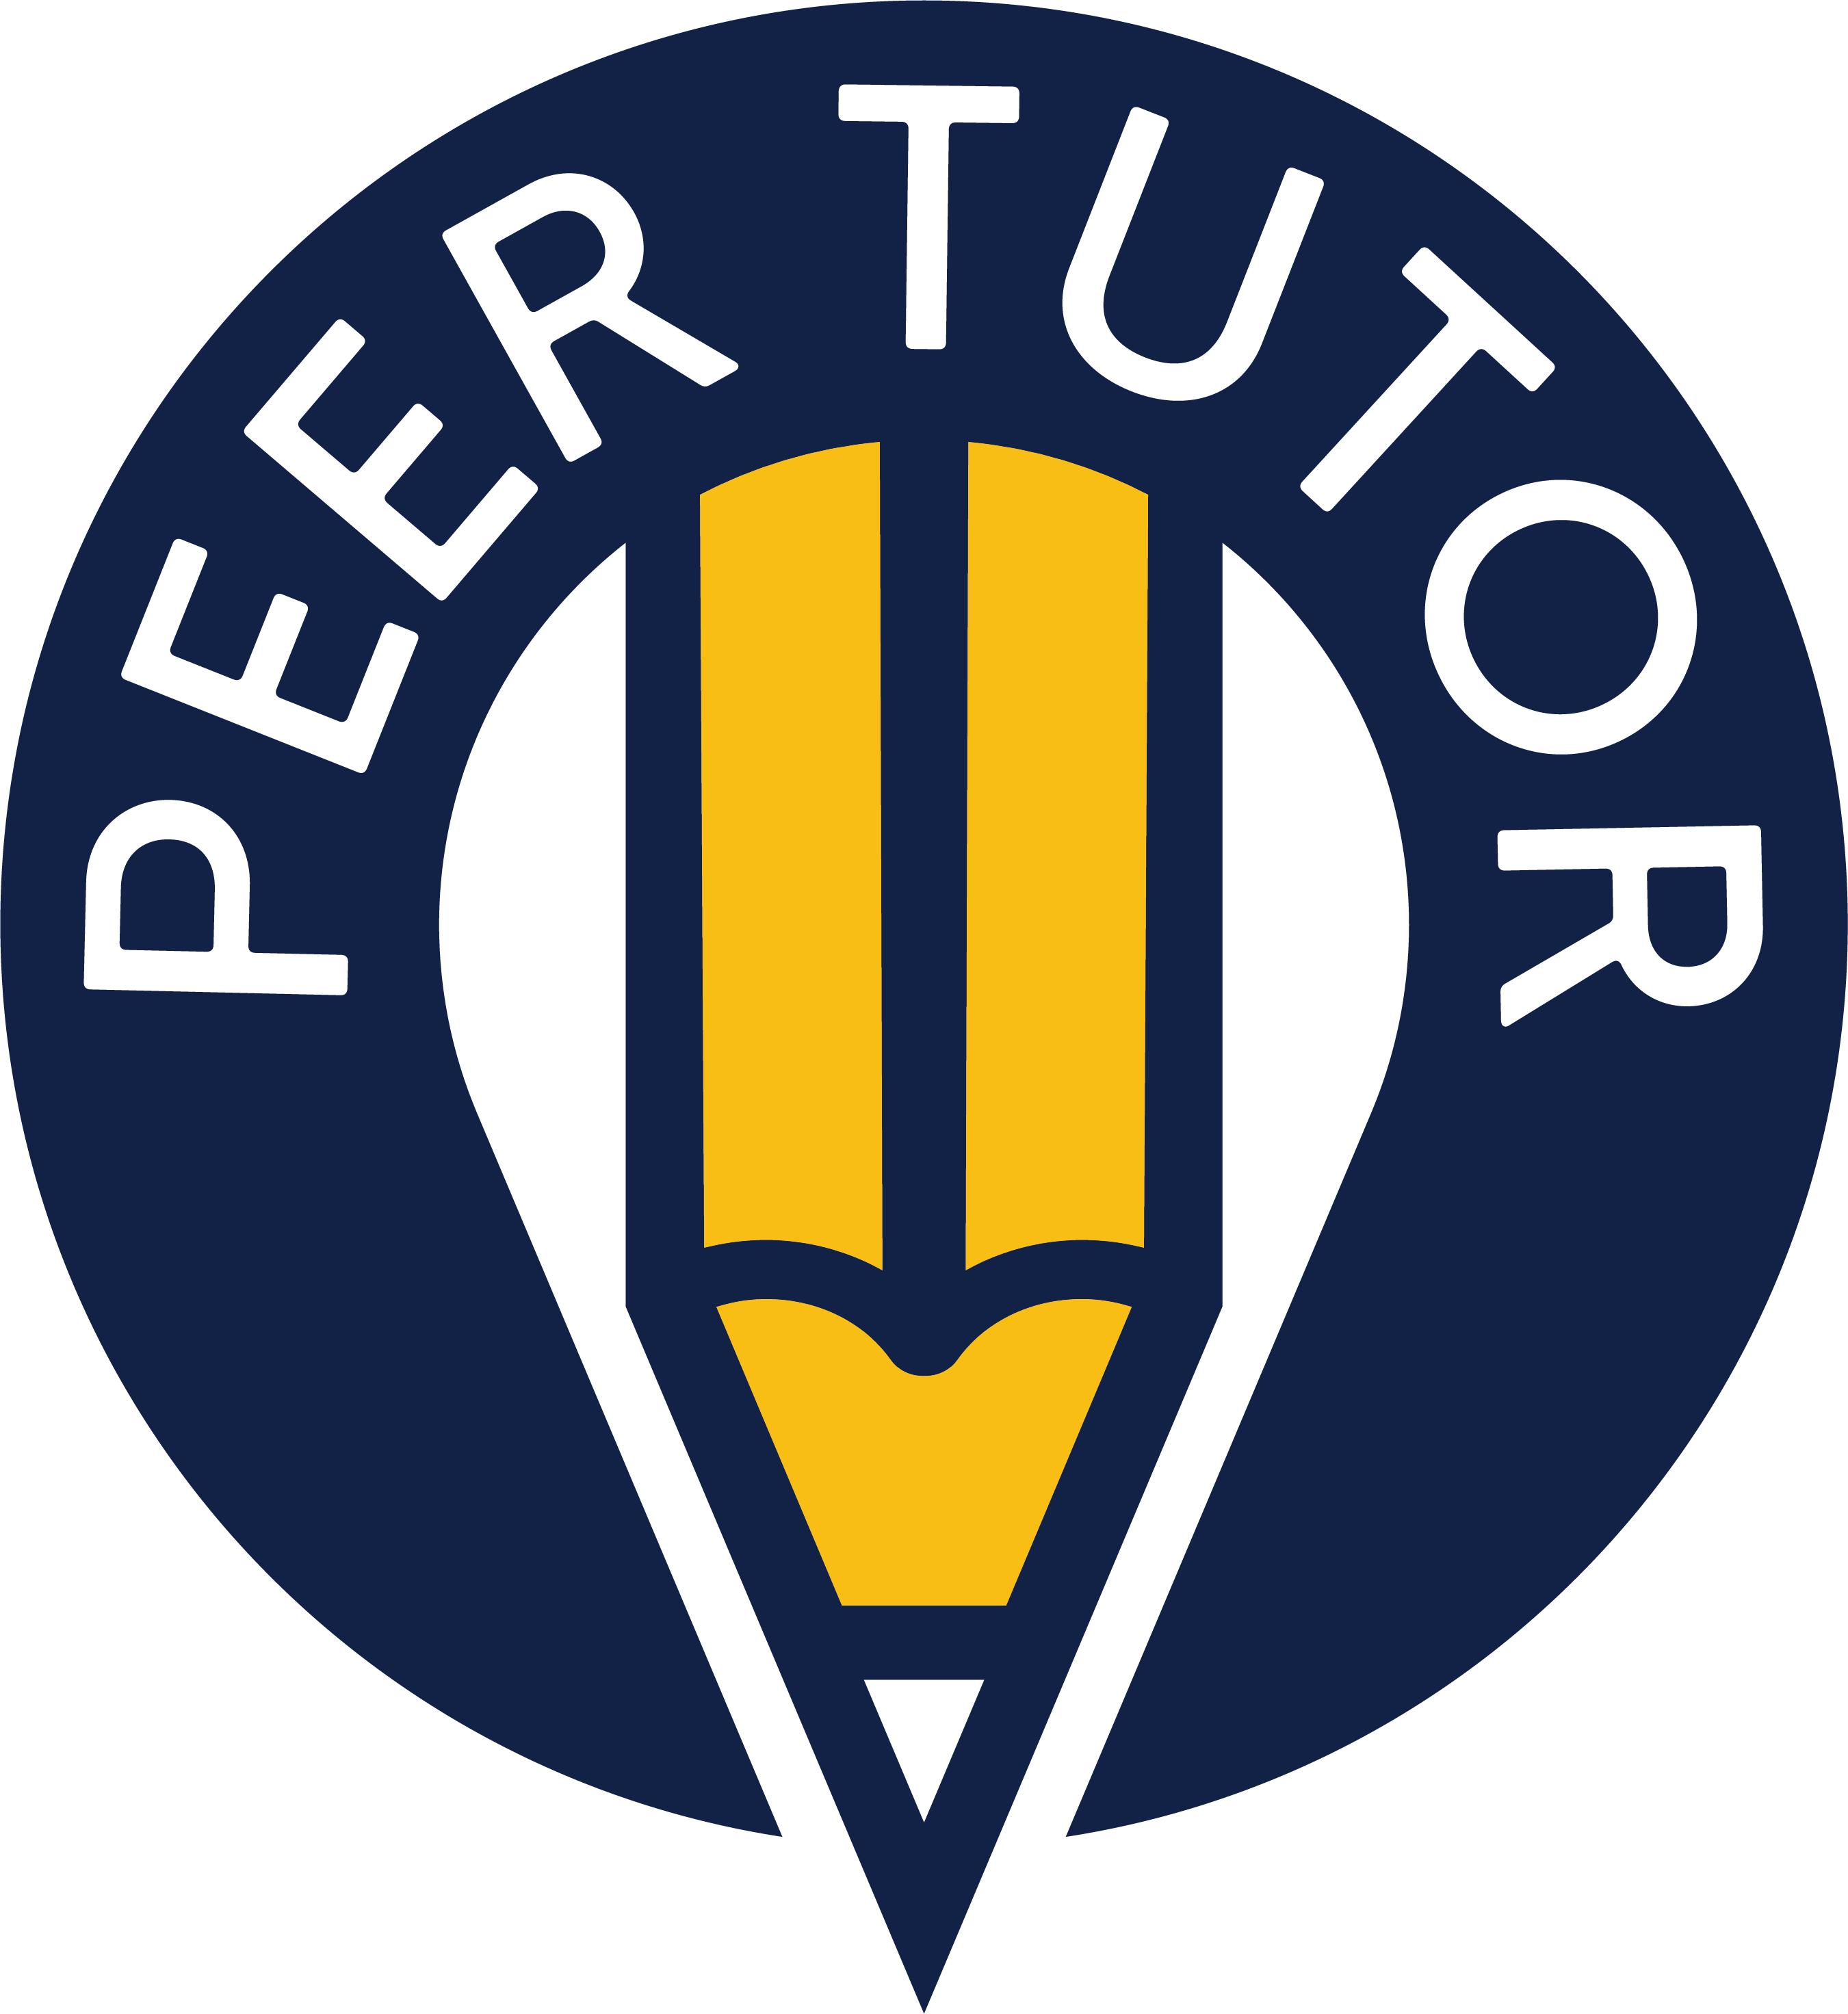 peer-tutor-logo.png